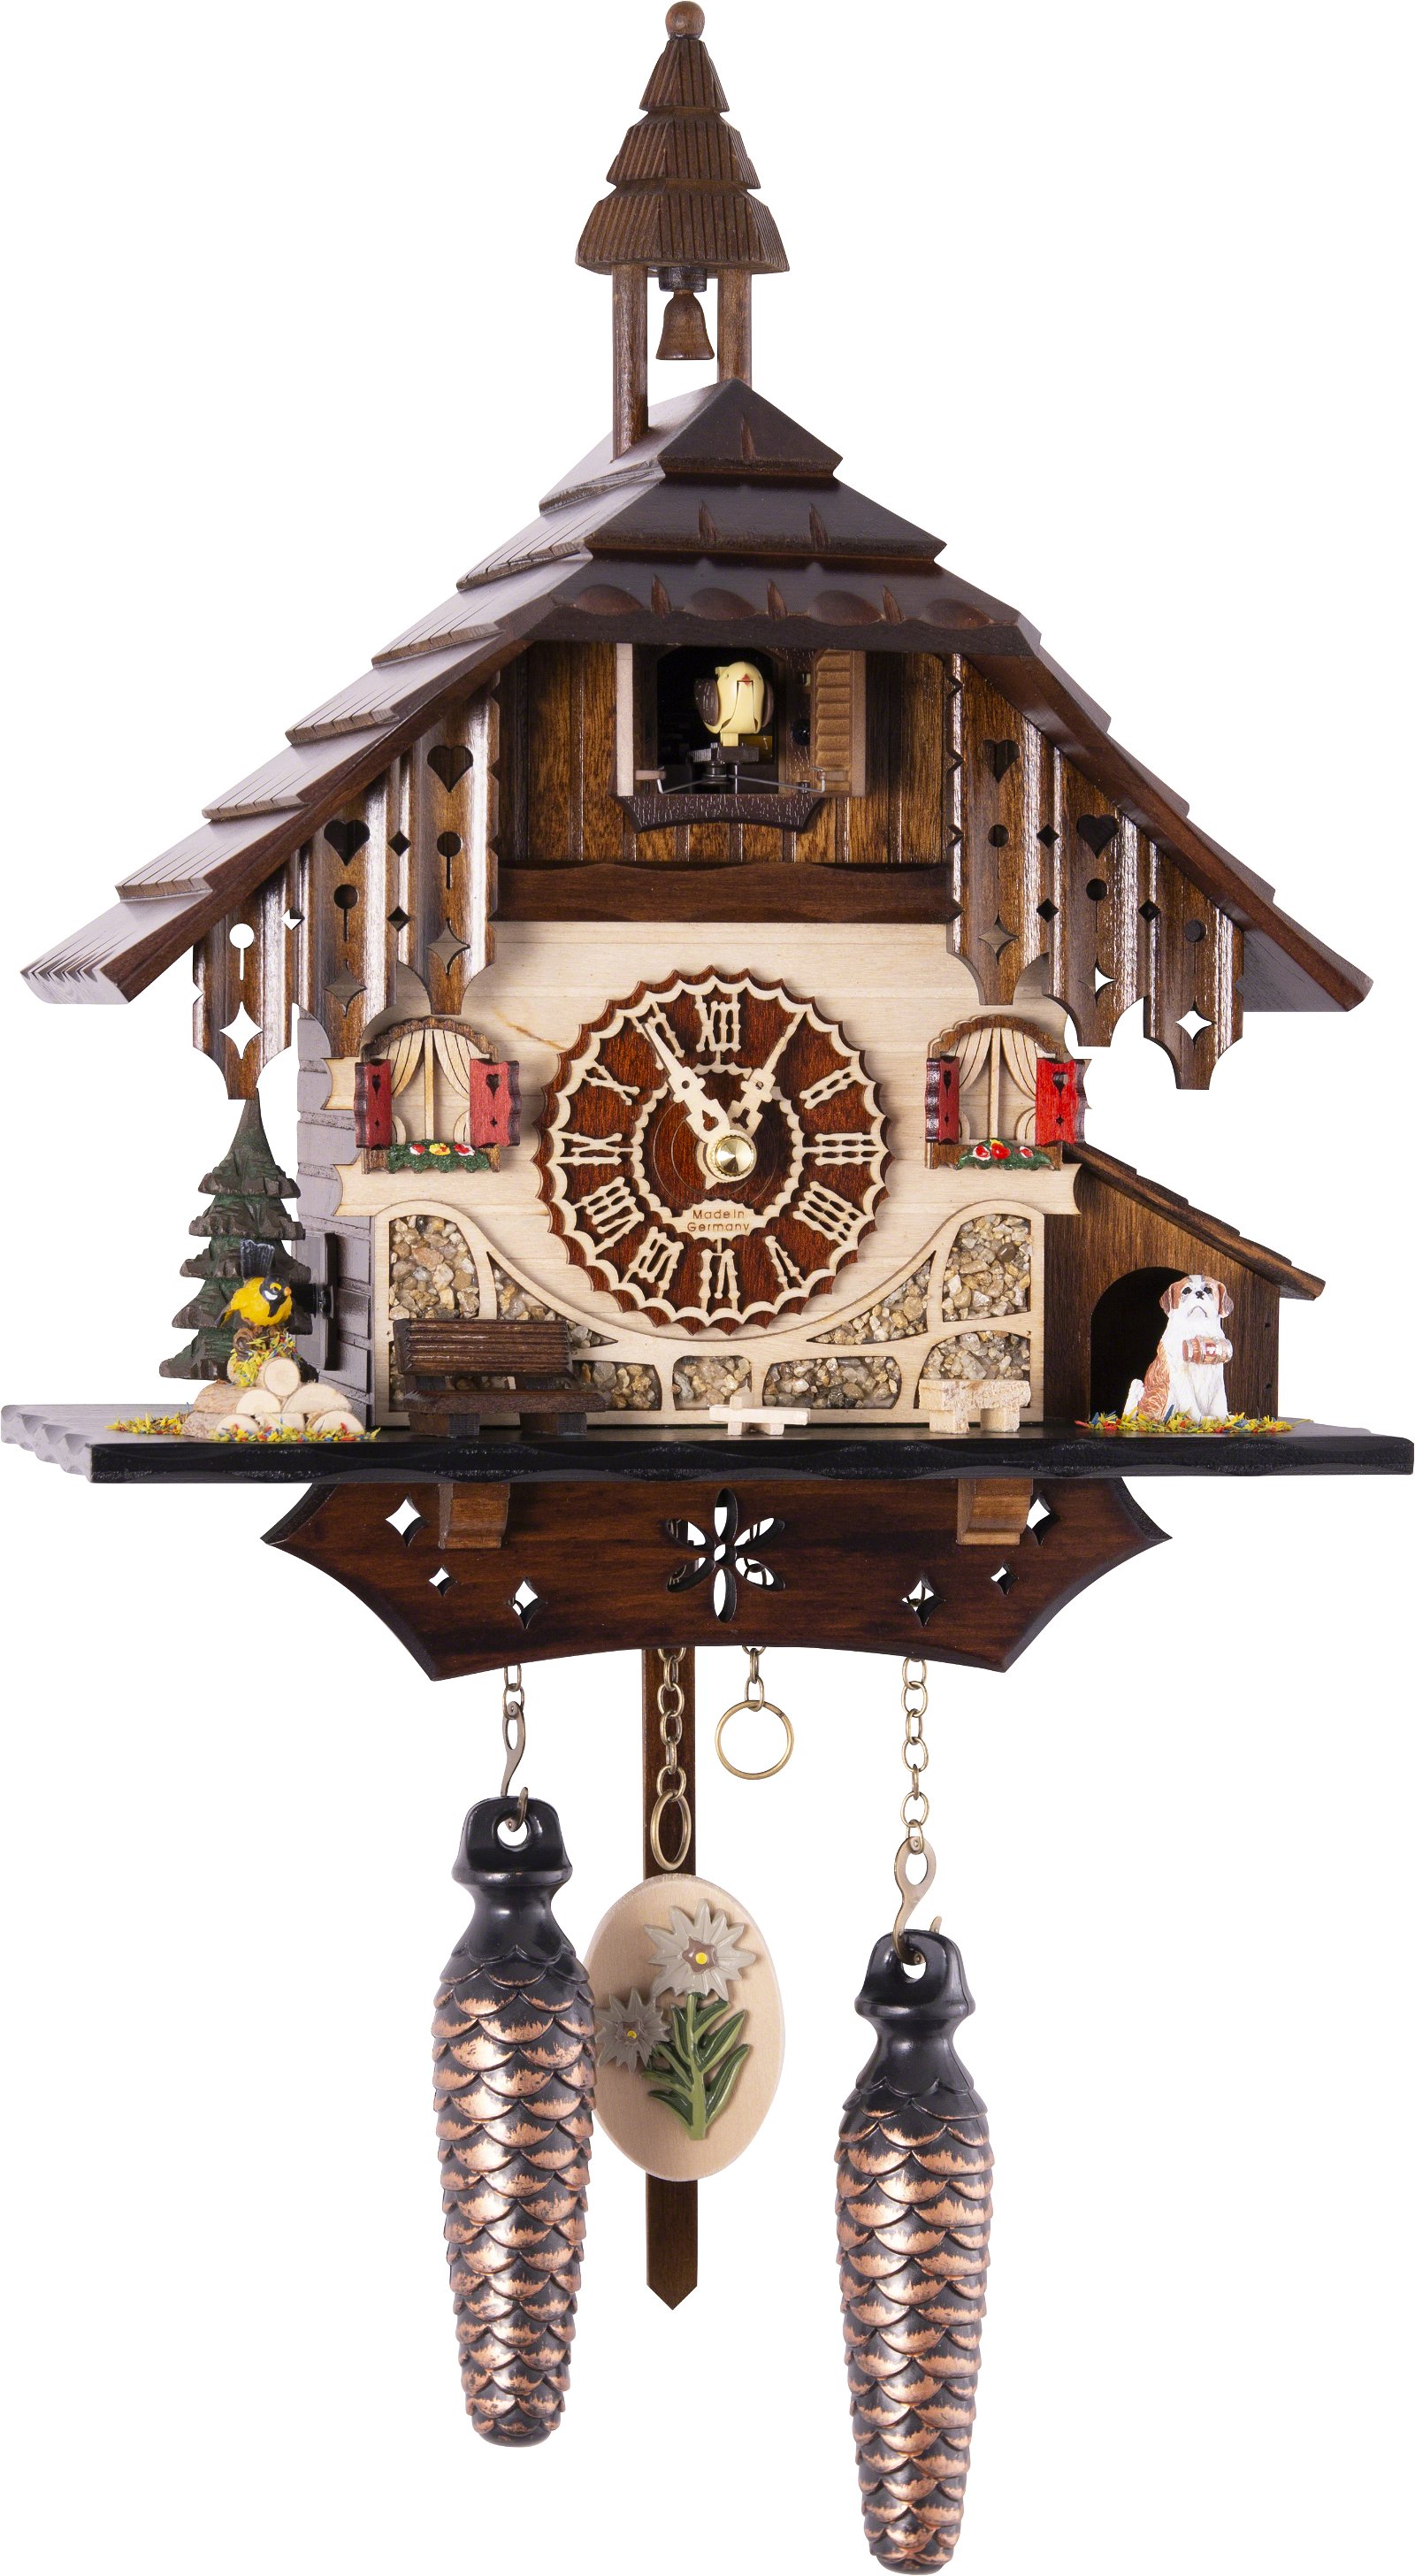 Kuckucksuhr Quarz-Uhrwerk Chalet-Stil 31cm von Trenkle Uhren